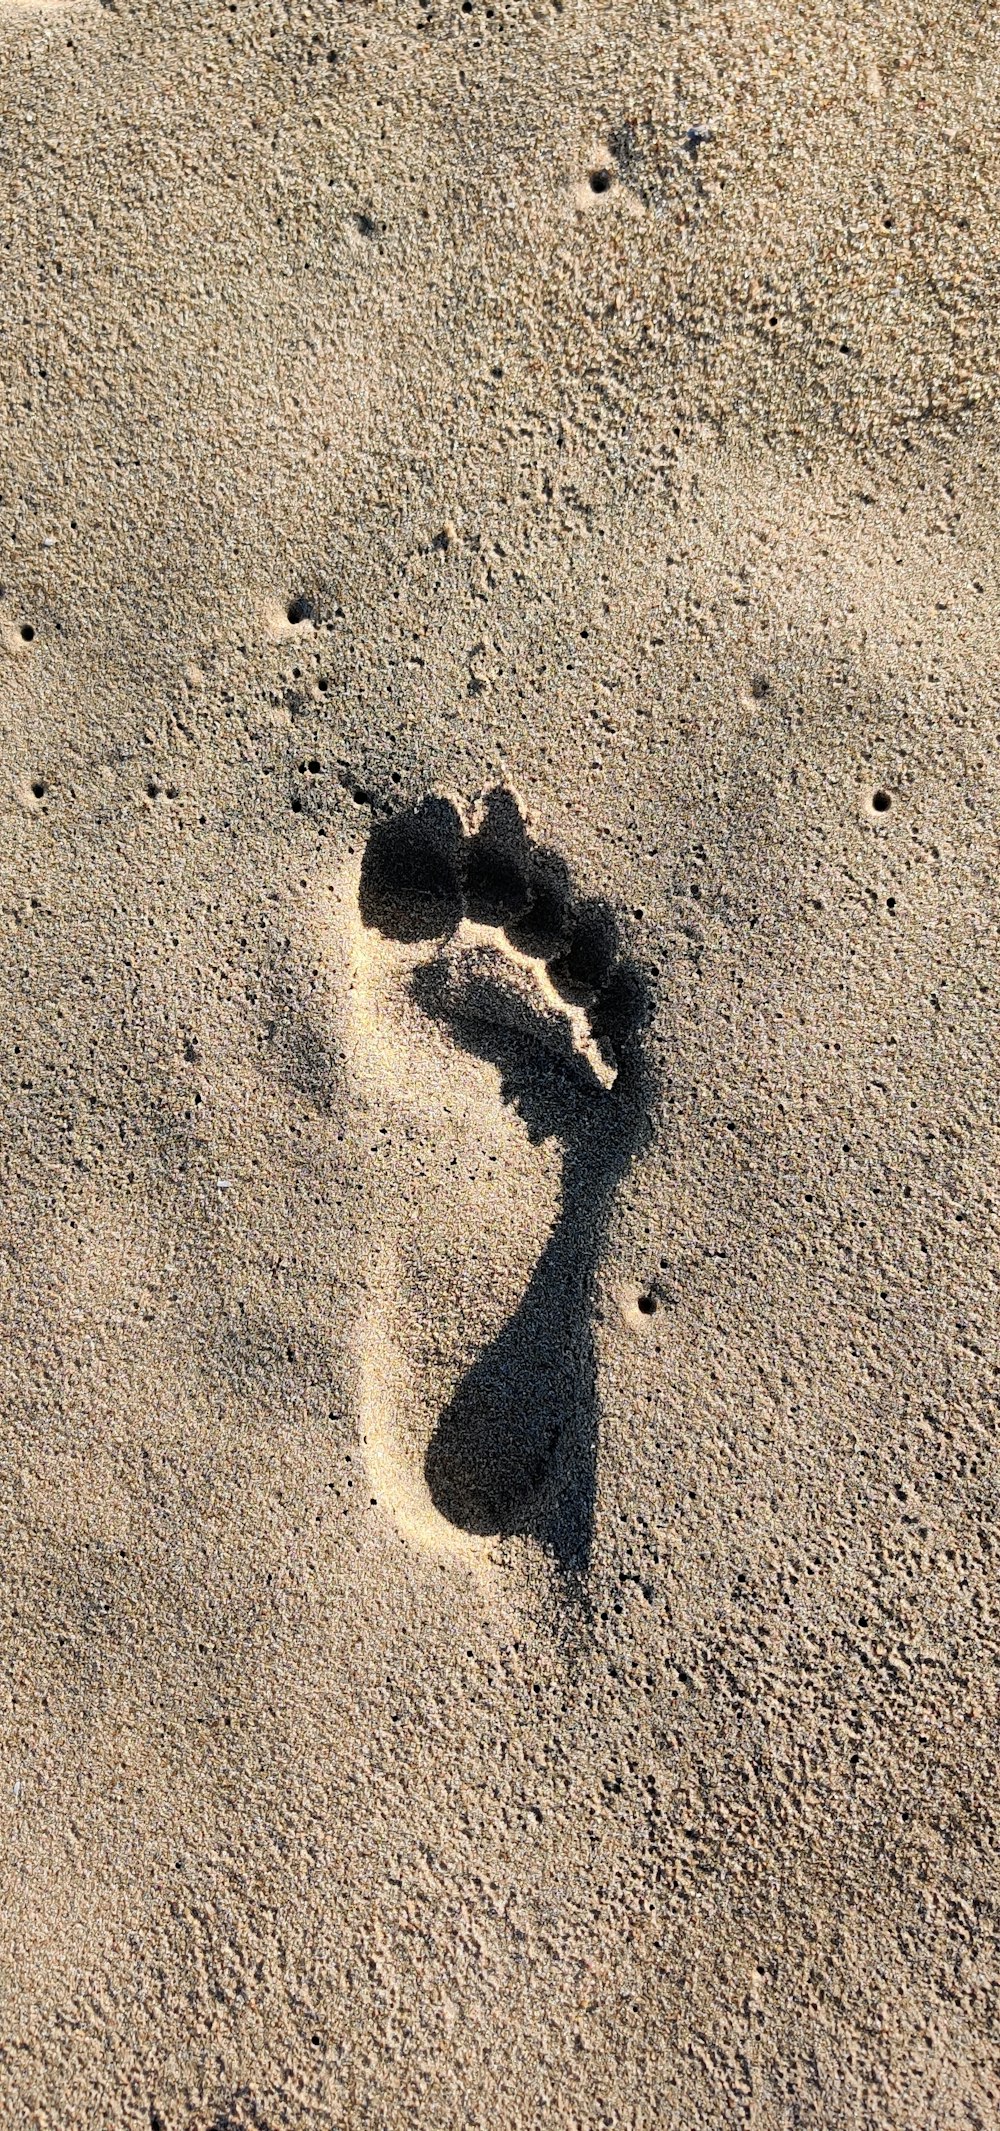 ombre de 2 personnes sur le sable brun pendant la journée